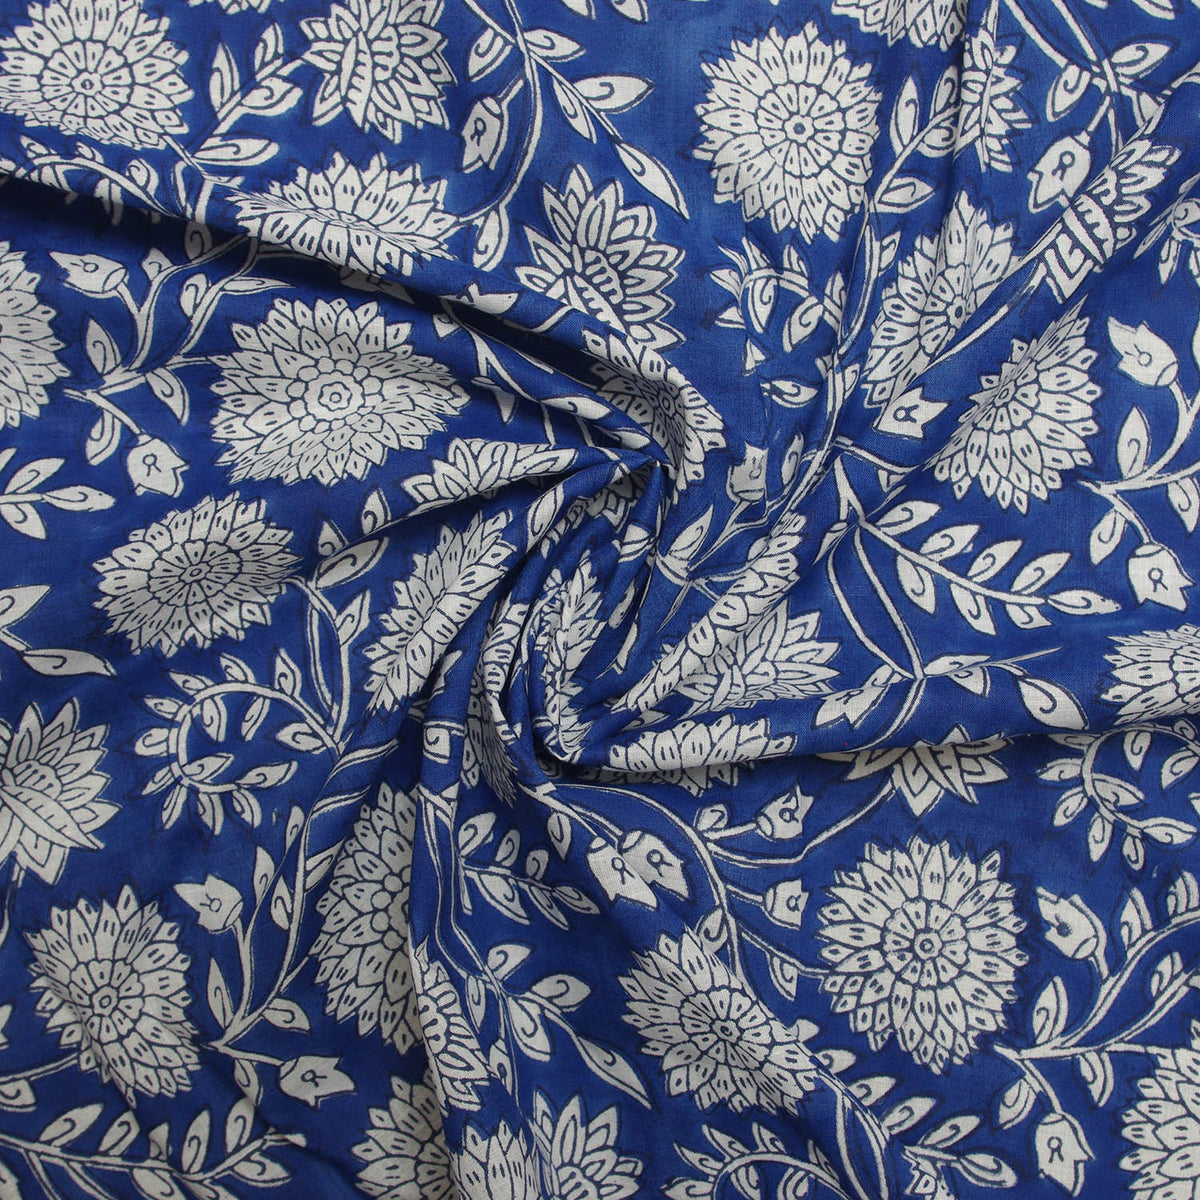 Indischer Handblockdruck Dunkelblaues Blumenmuster 100 % Baumwolle Damenkleid Stoffdesign 16